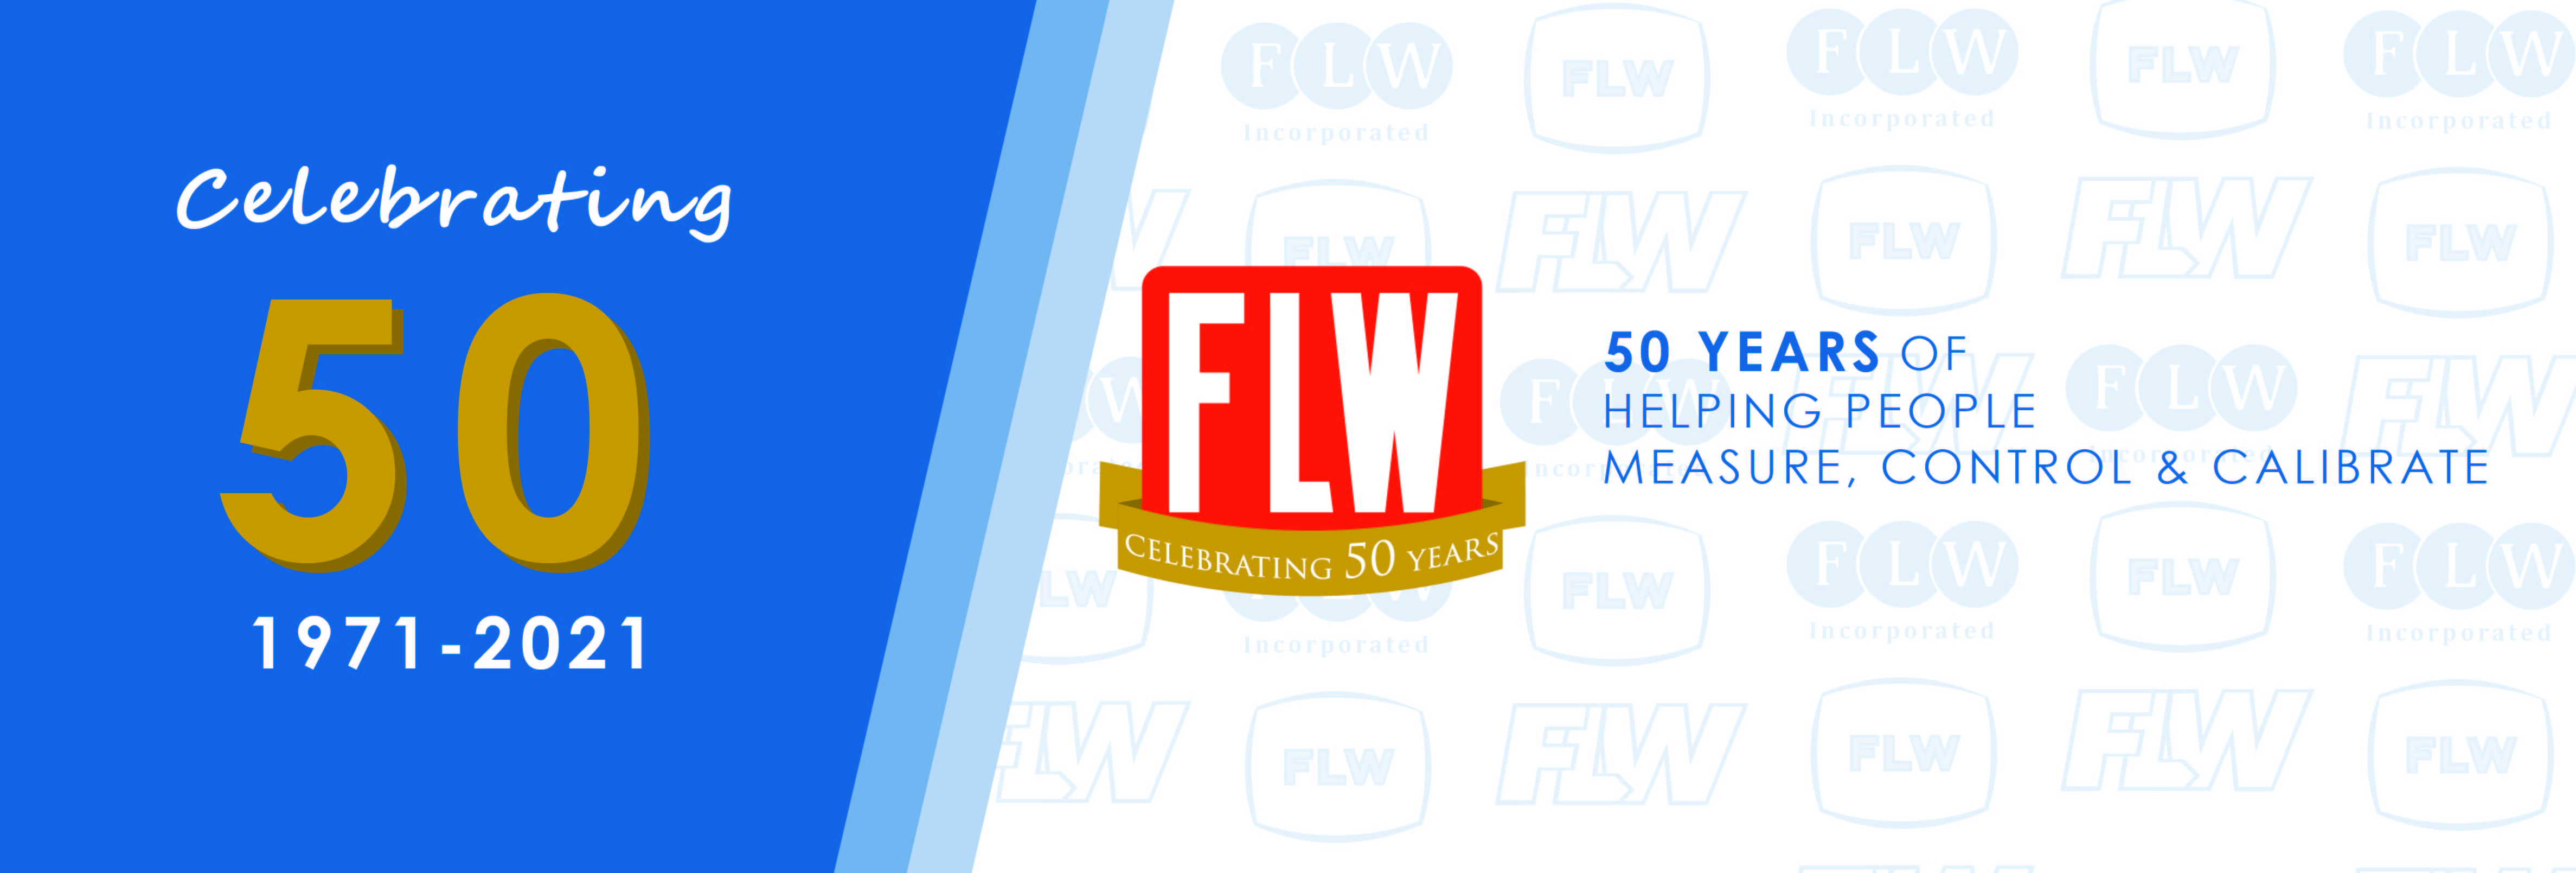 FLW Celebrates 50 Years